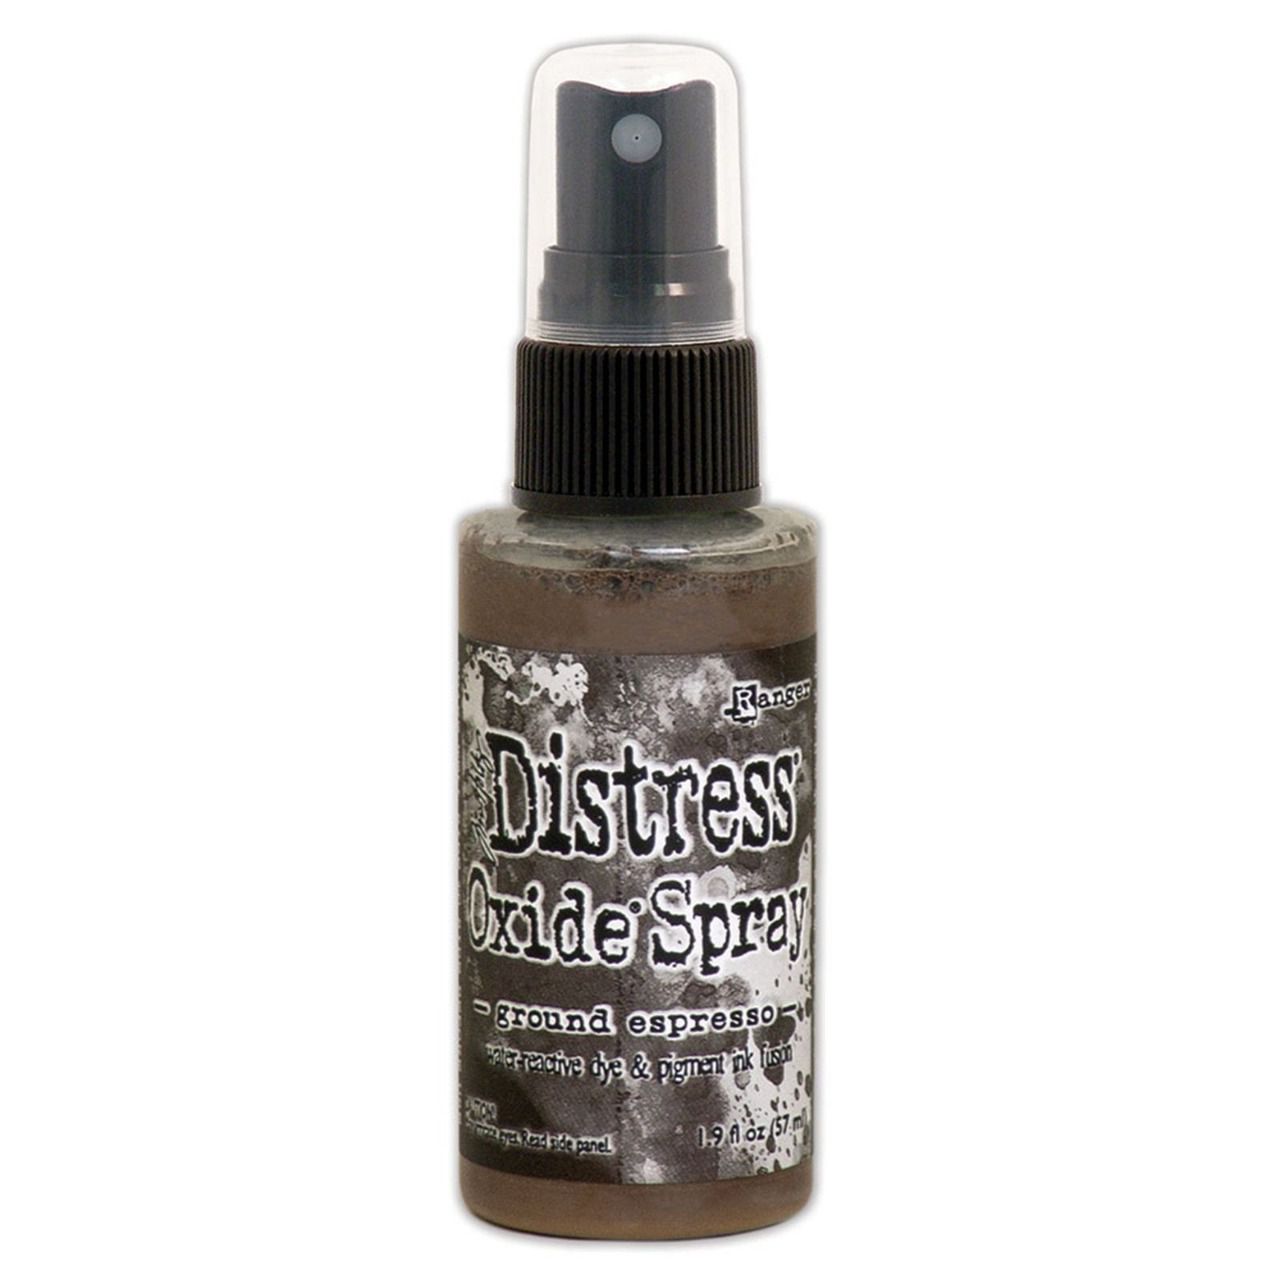 Distress spray oxide : Ground espresso